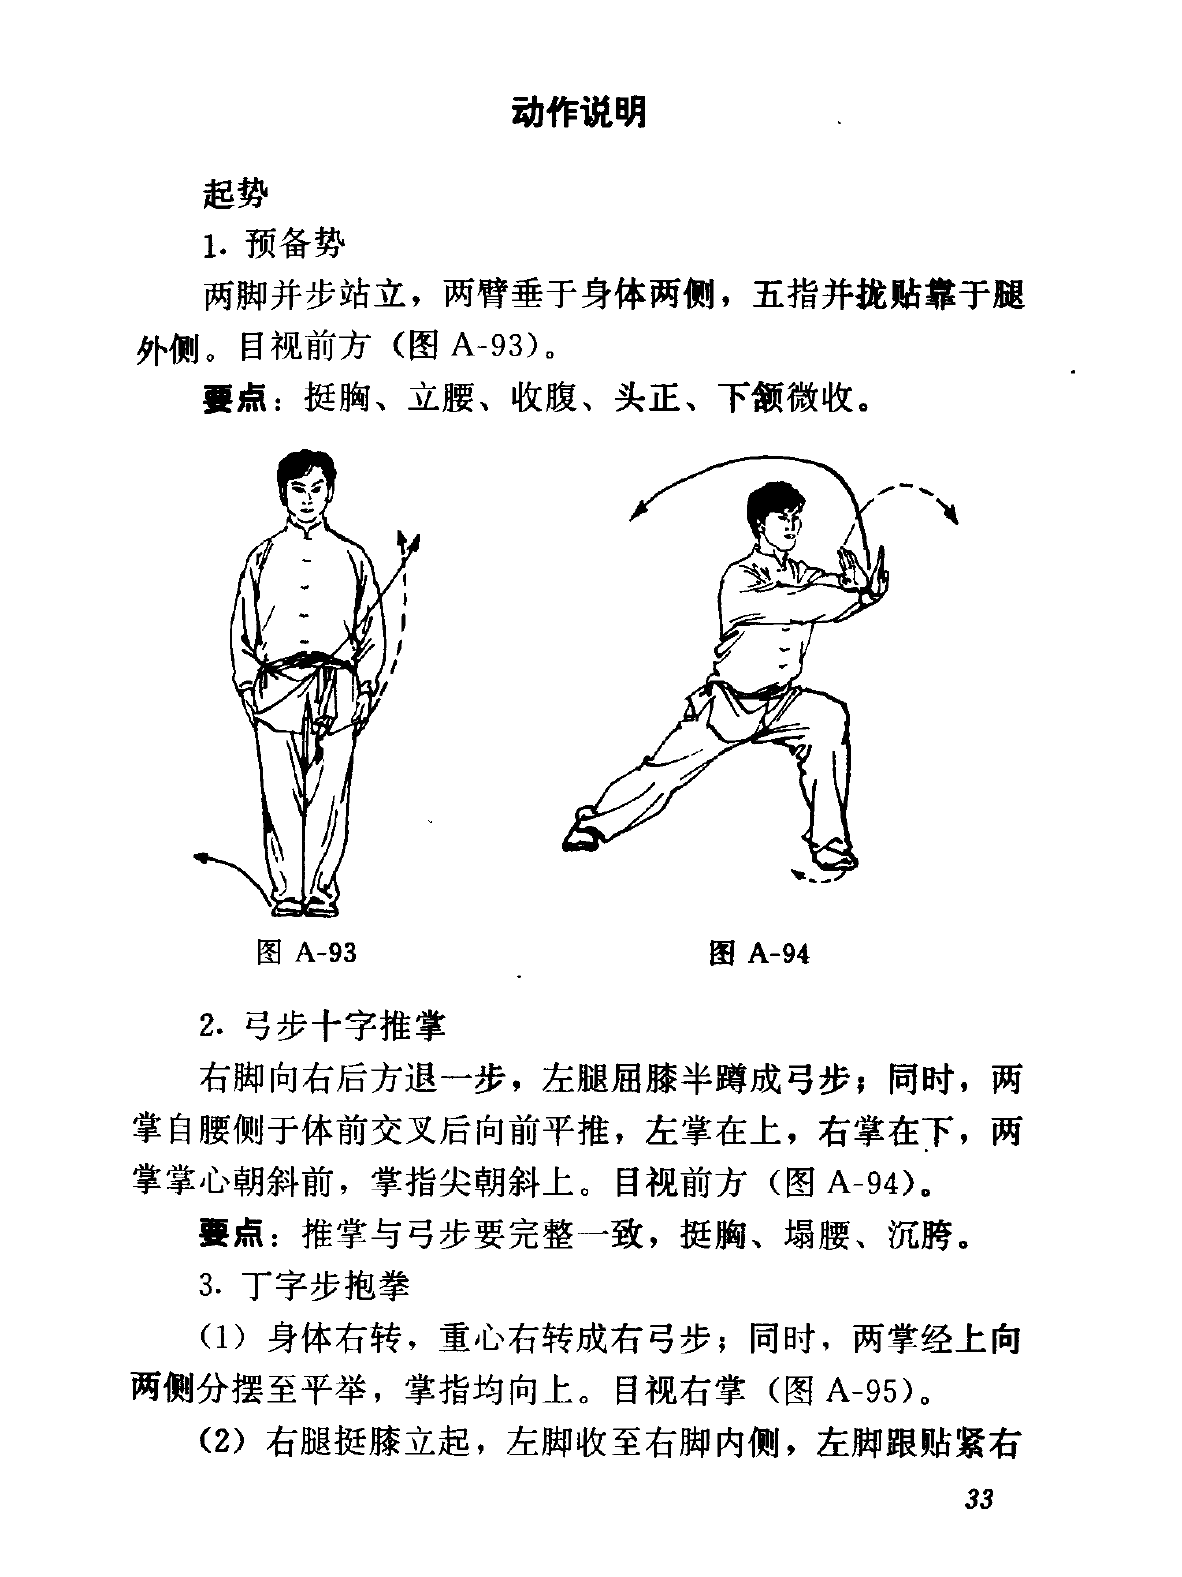 Wushu pdf